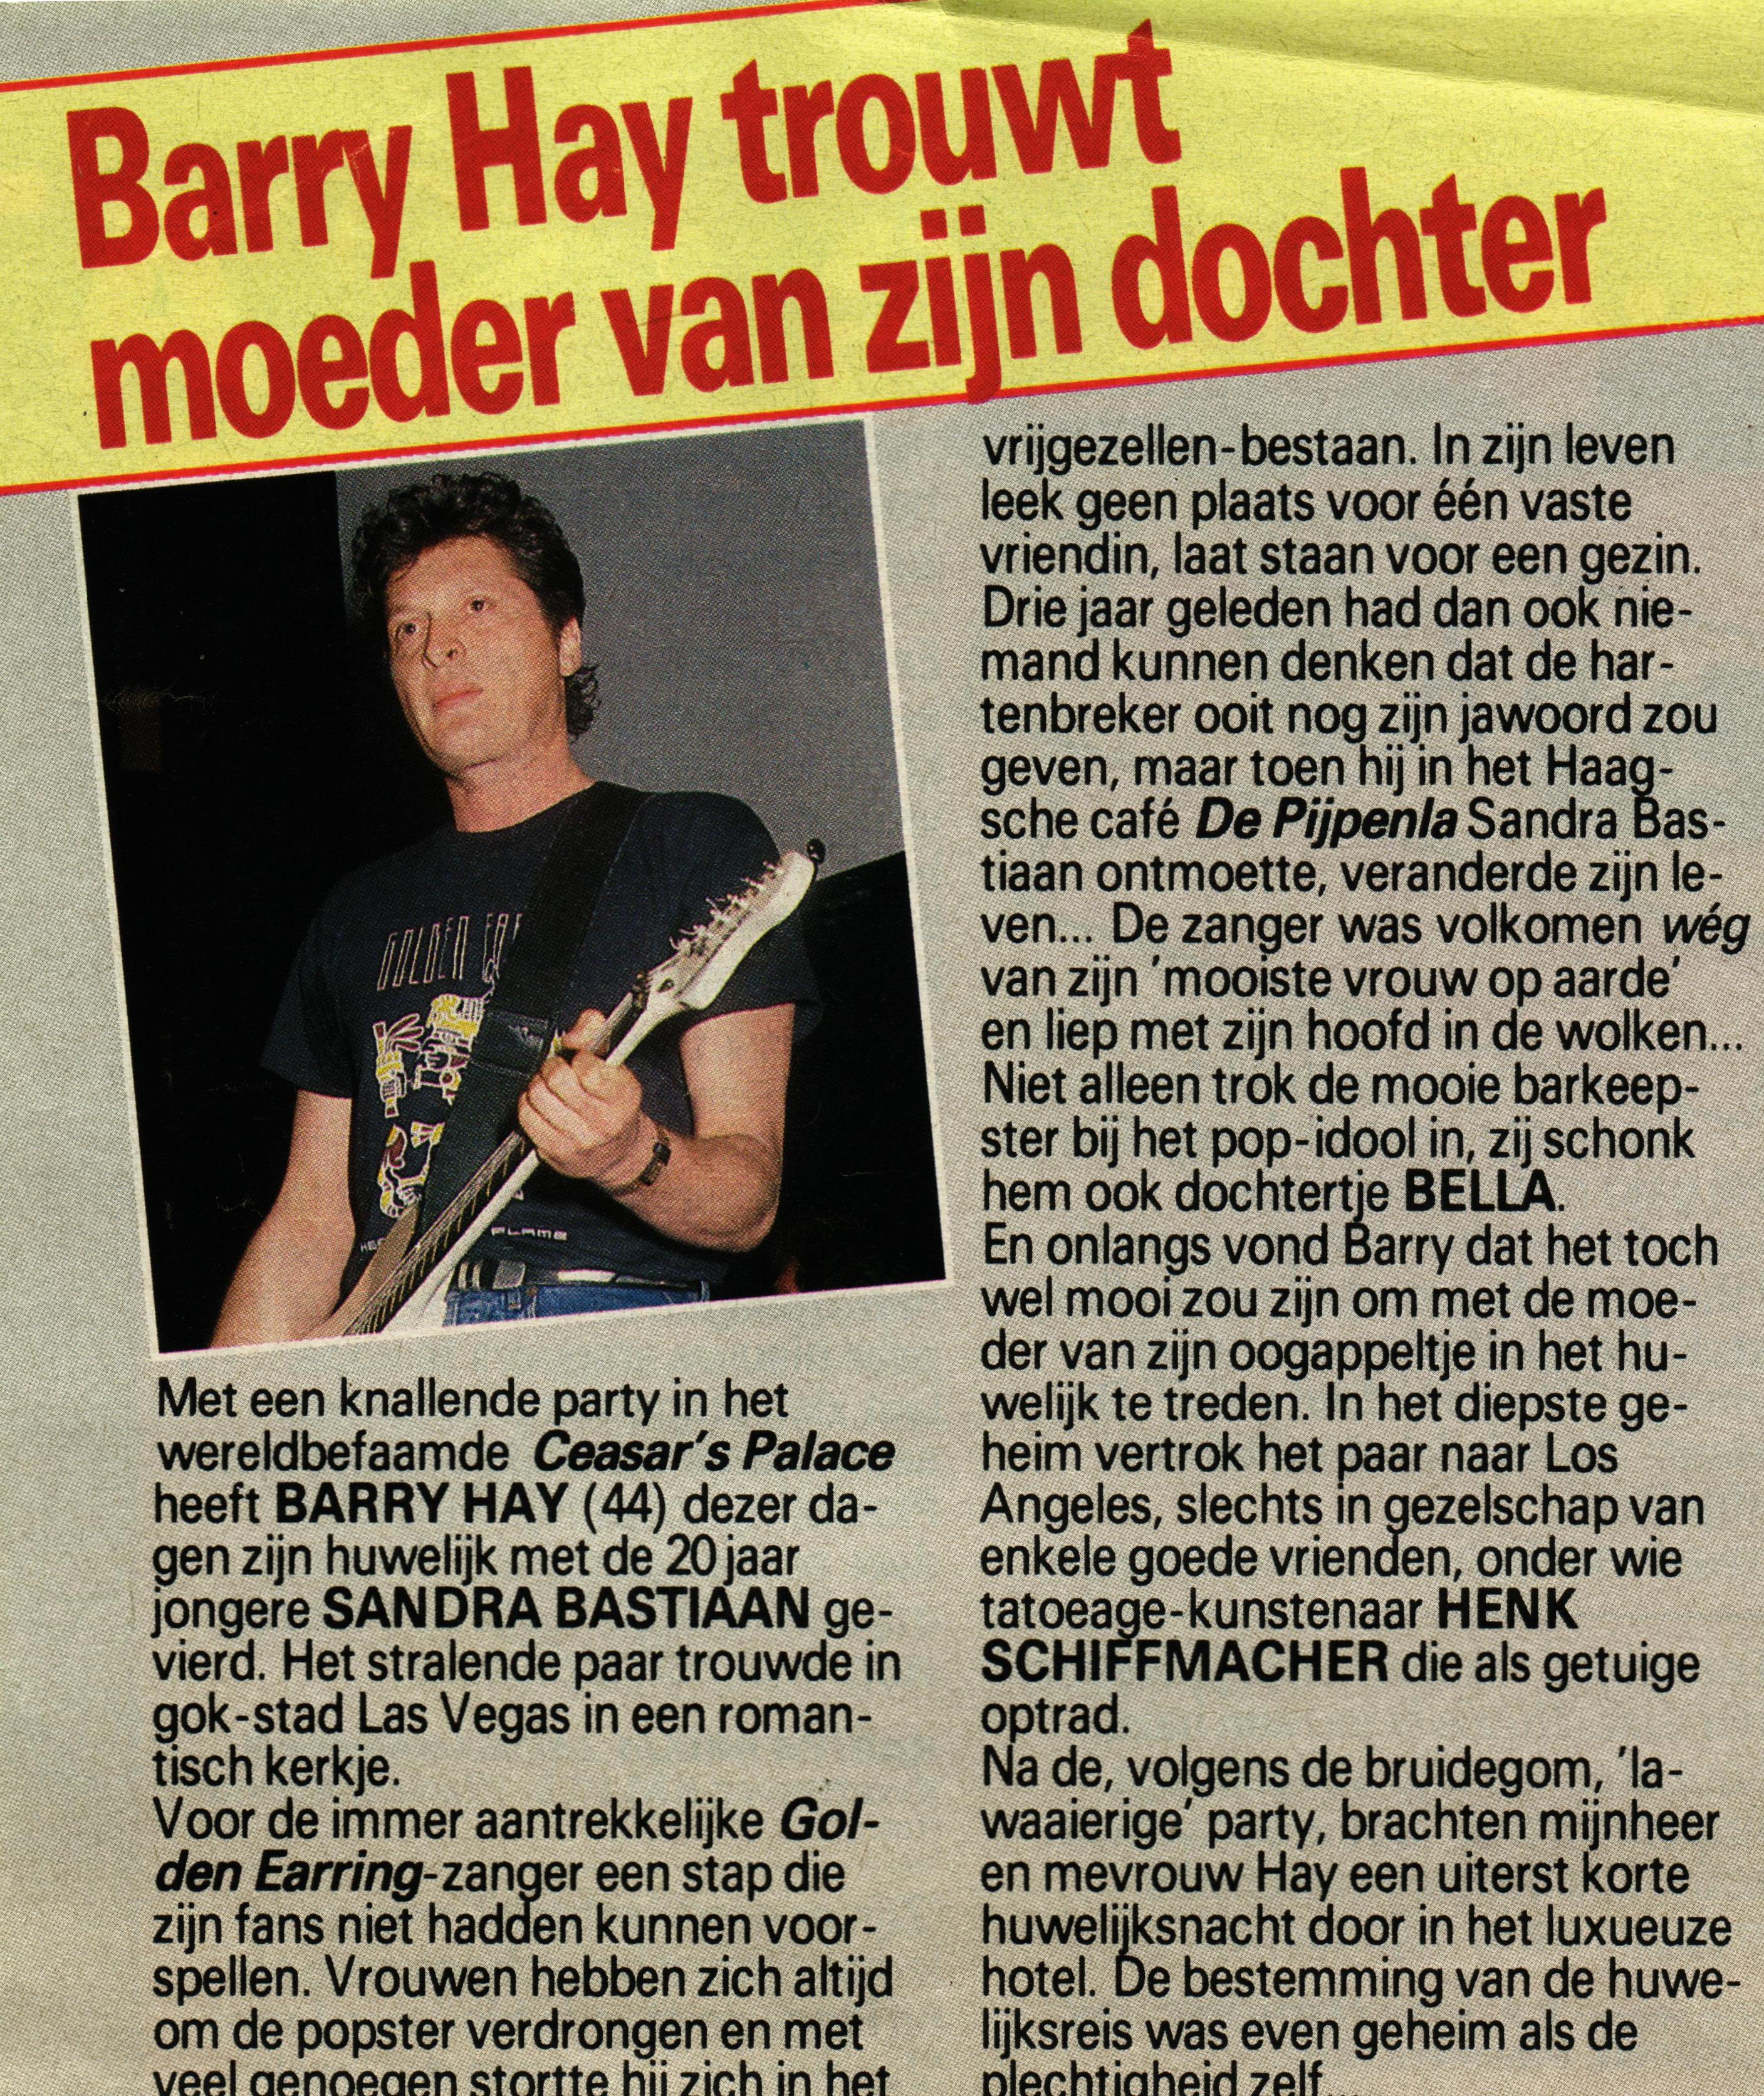 Prive Magazine March 09 1992: Barry Hay trouwt moeder van zijn dochter